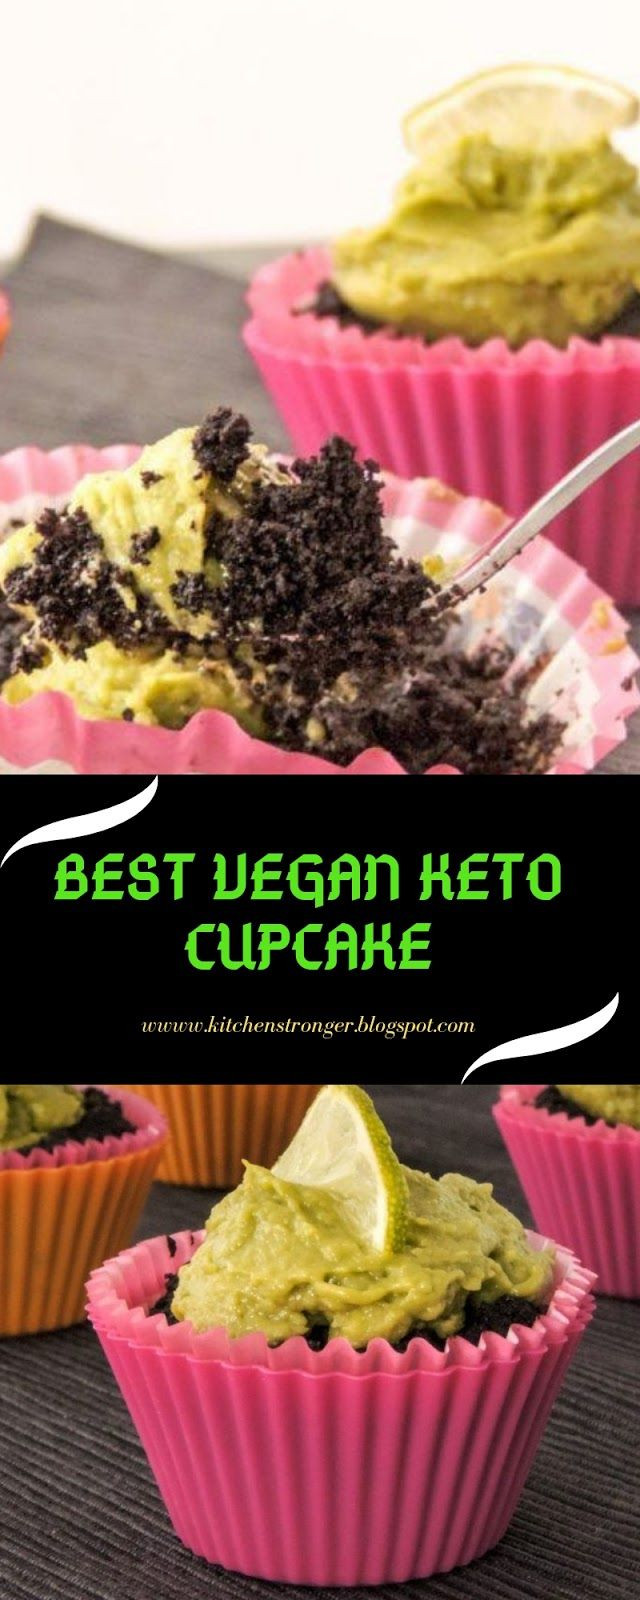 Vegan Keto Cupcakes
 BEST VEGAN KETO CUPCAKE